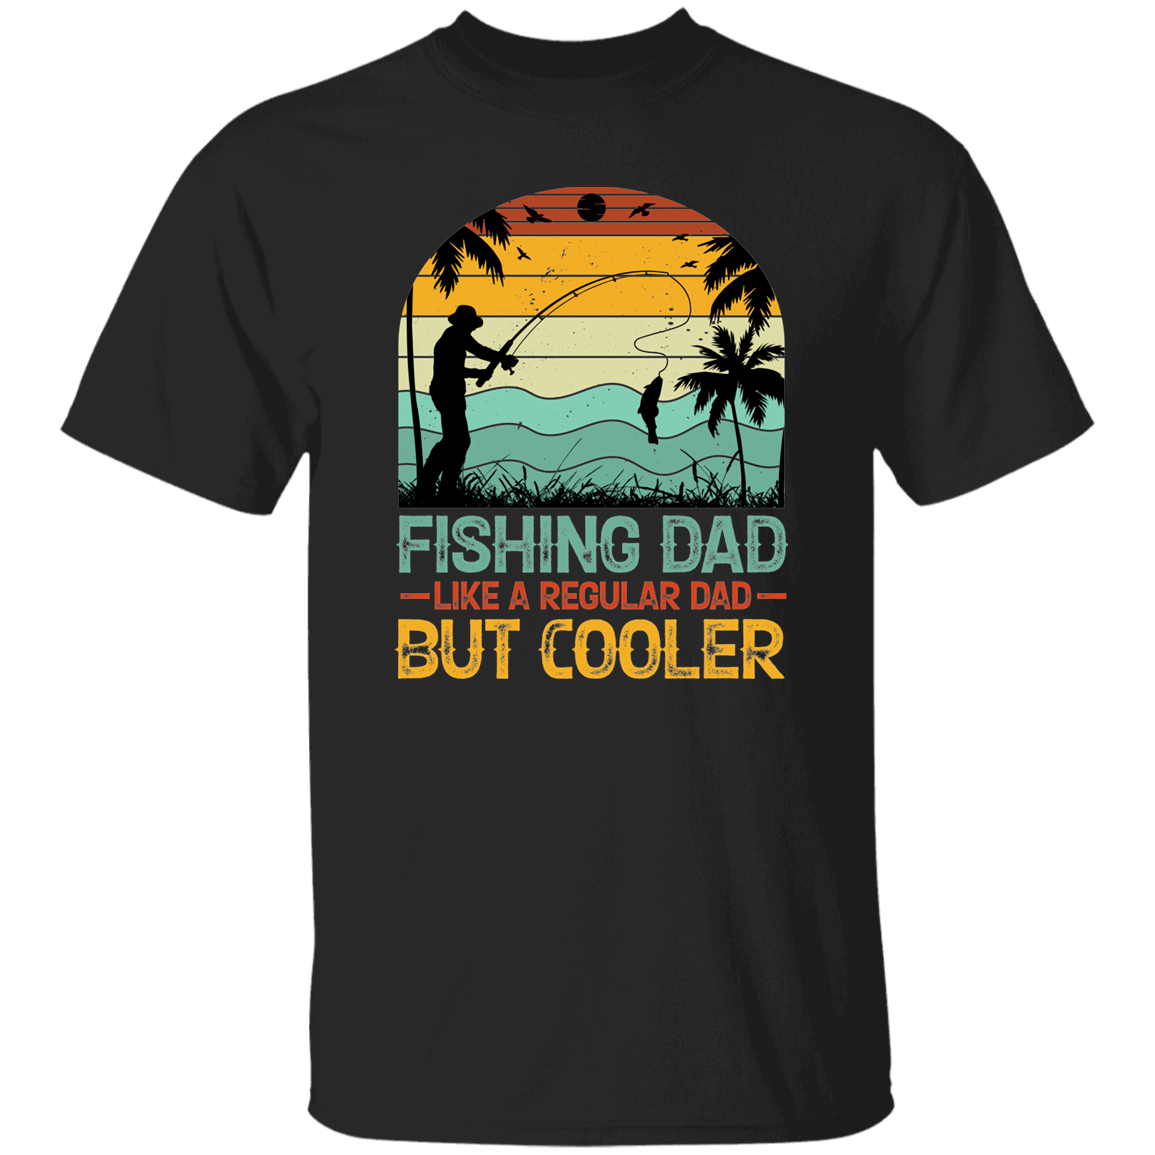 Fishing Dad - G500 5.3 oz. T-Shirt